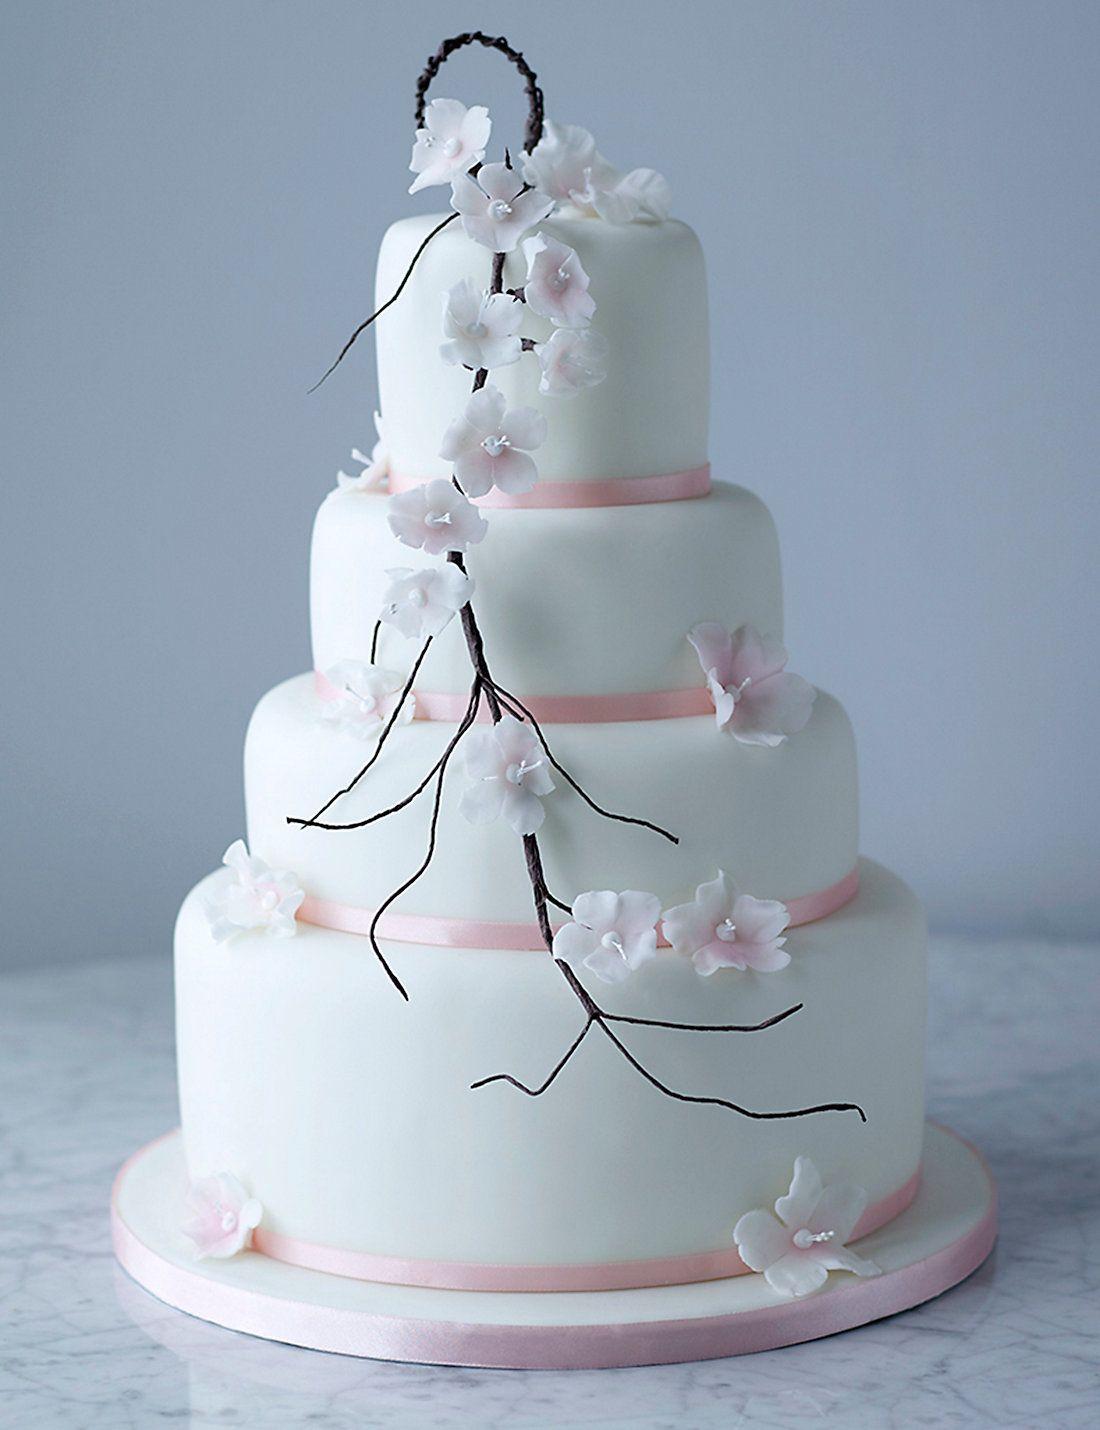 Wedding Cakes Full HD Quality Photo, Image Of Wedding Cakes